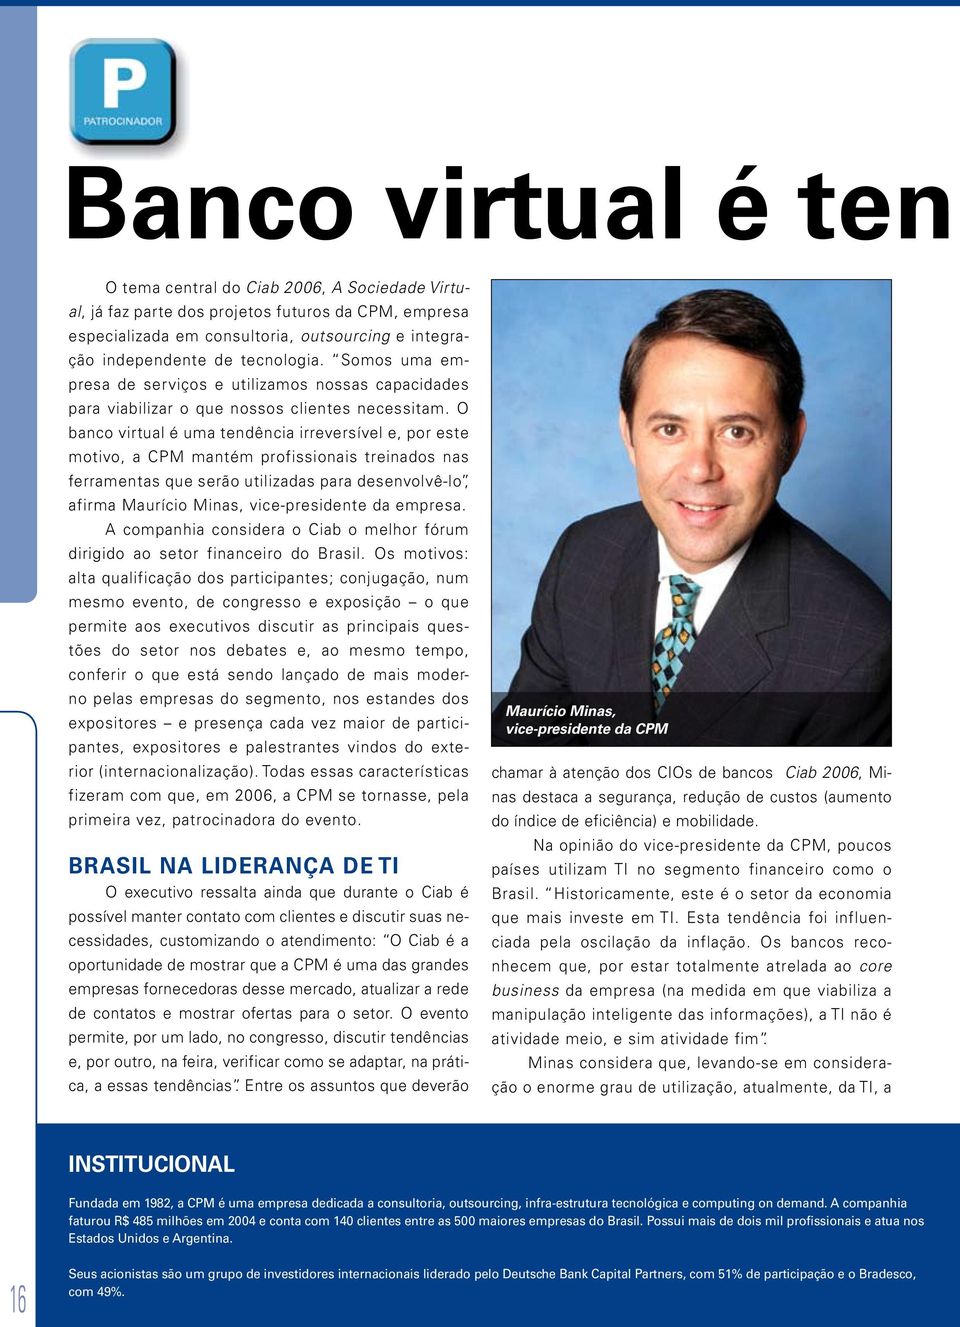 O banco virtual é uma tendência irreversível e, por este motivo, a CPM mantém profissionais treinados nas ferramentas que serão utilizadas para desenvolvê-lo, afirma Maurício Minas, vice-presidente